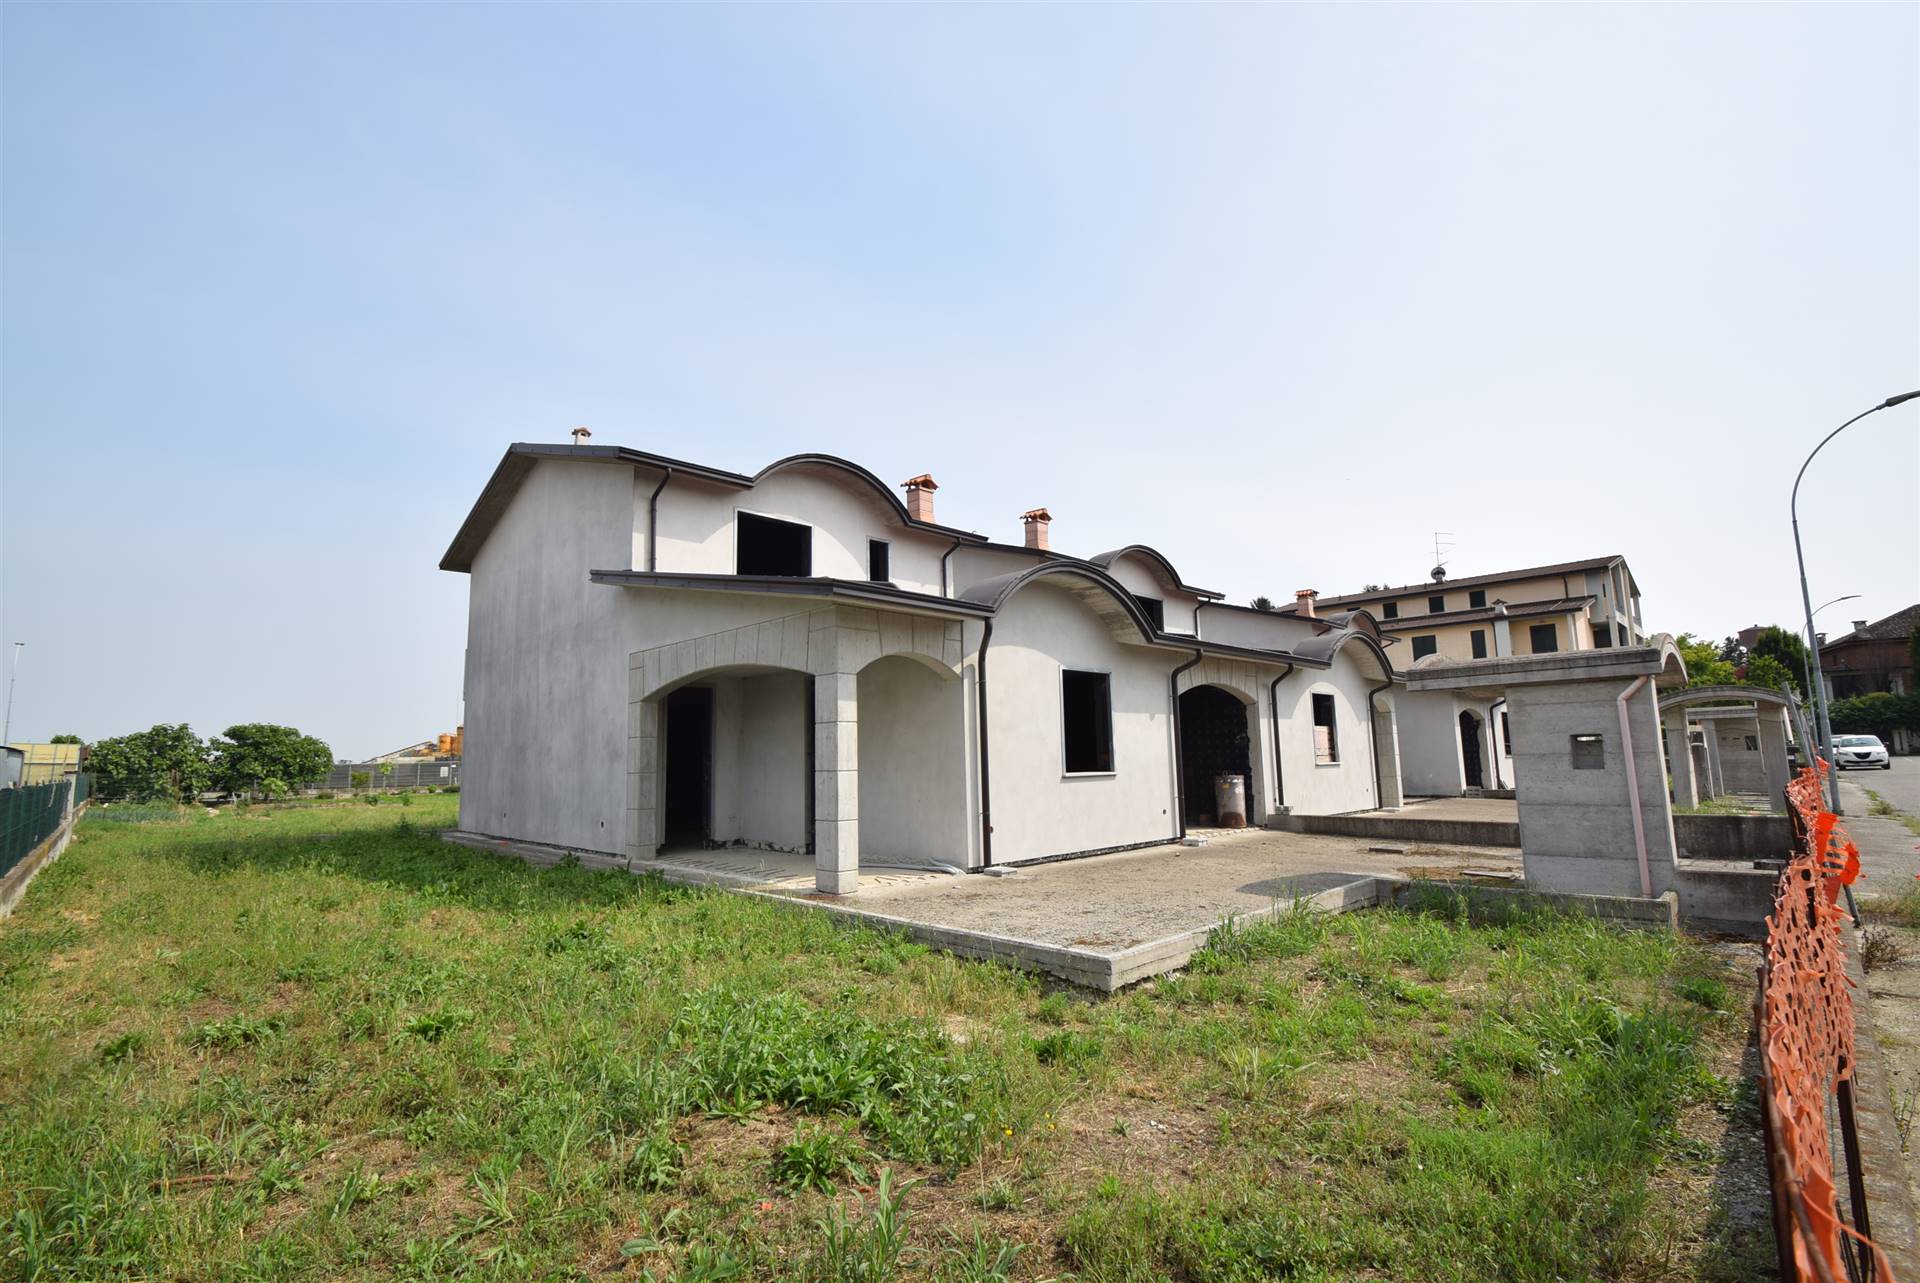 Villa a Schiera in vendita a Cadeo, 4 locali, zona Zona: Roveleto, prezzo € 150.000 | CambioCasa.it